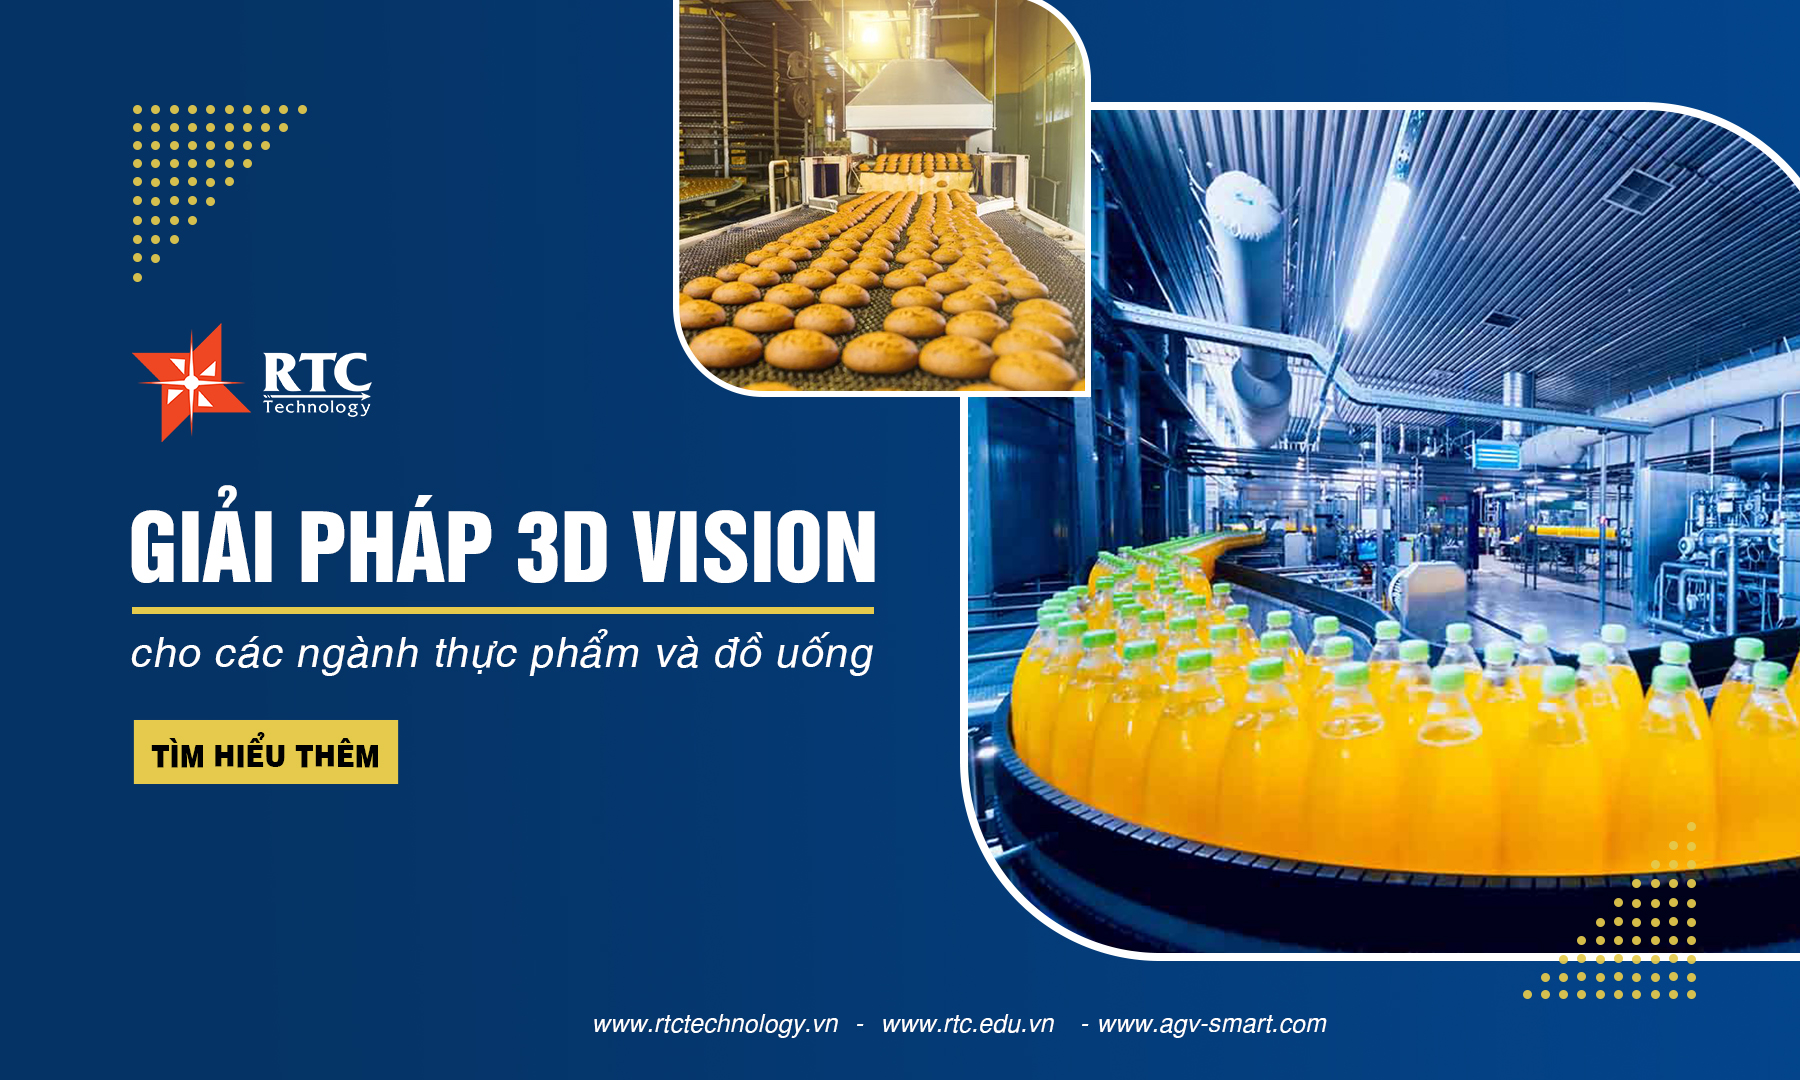 Giải pháp 3D Vision cho các ngành thực phẩm và đồ uống